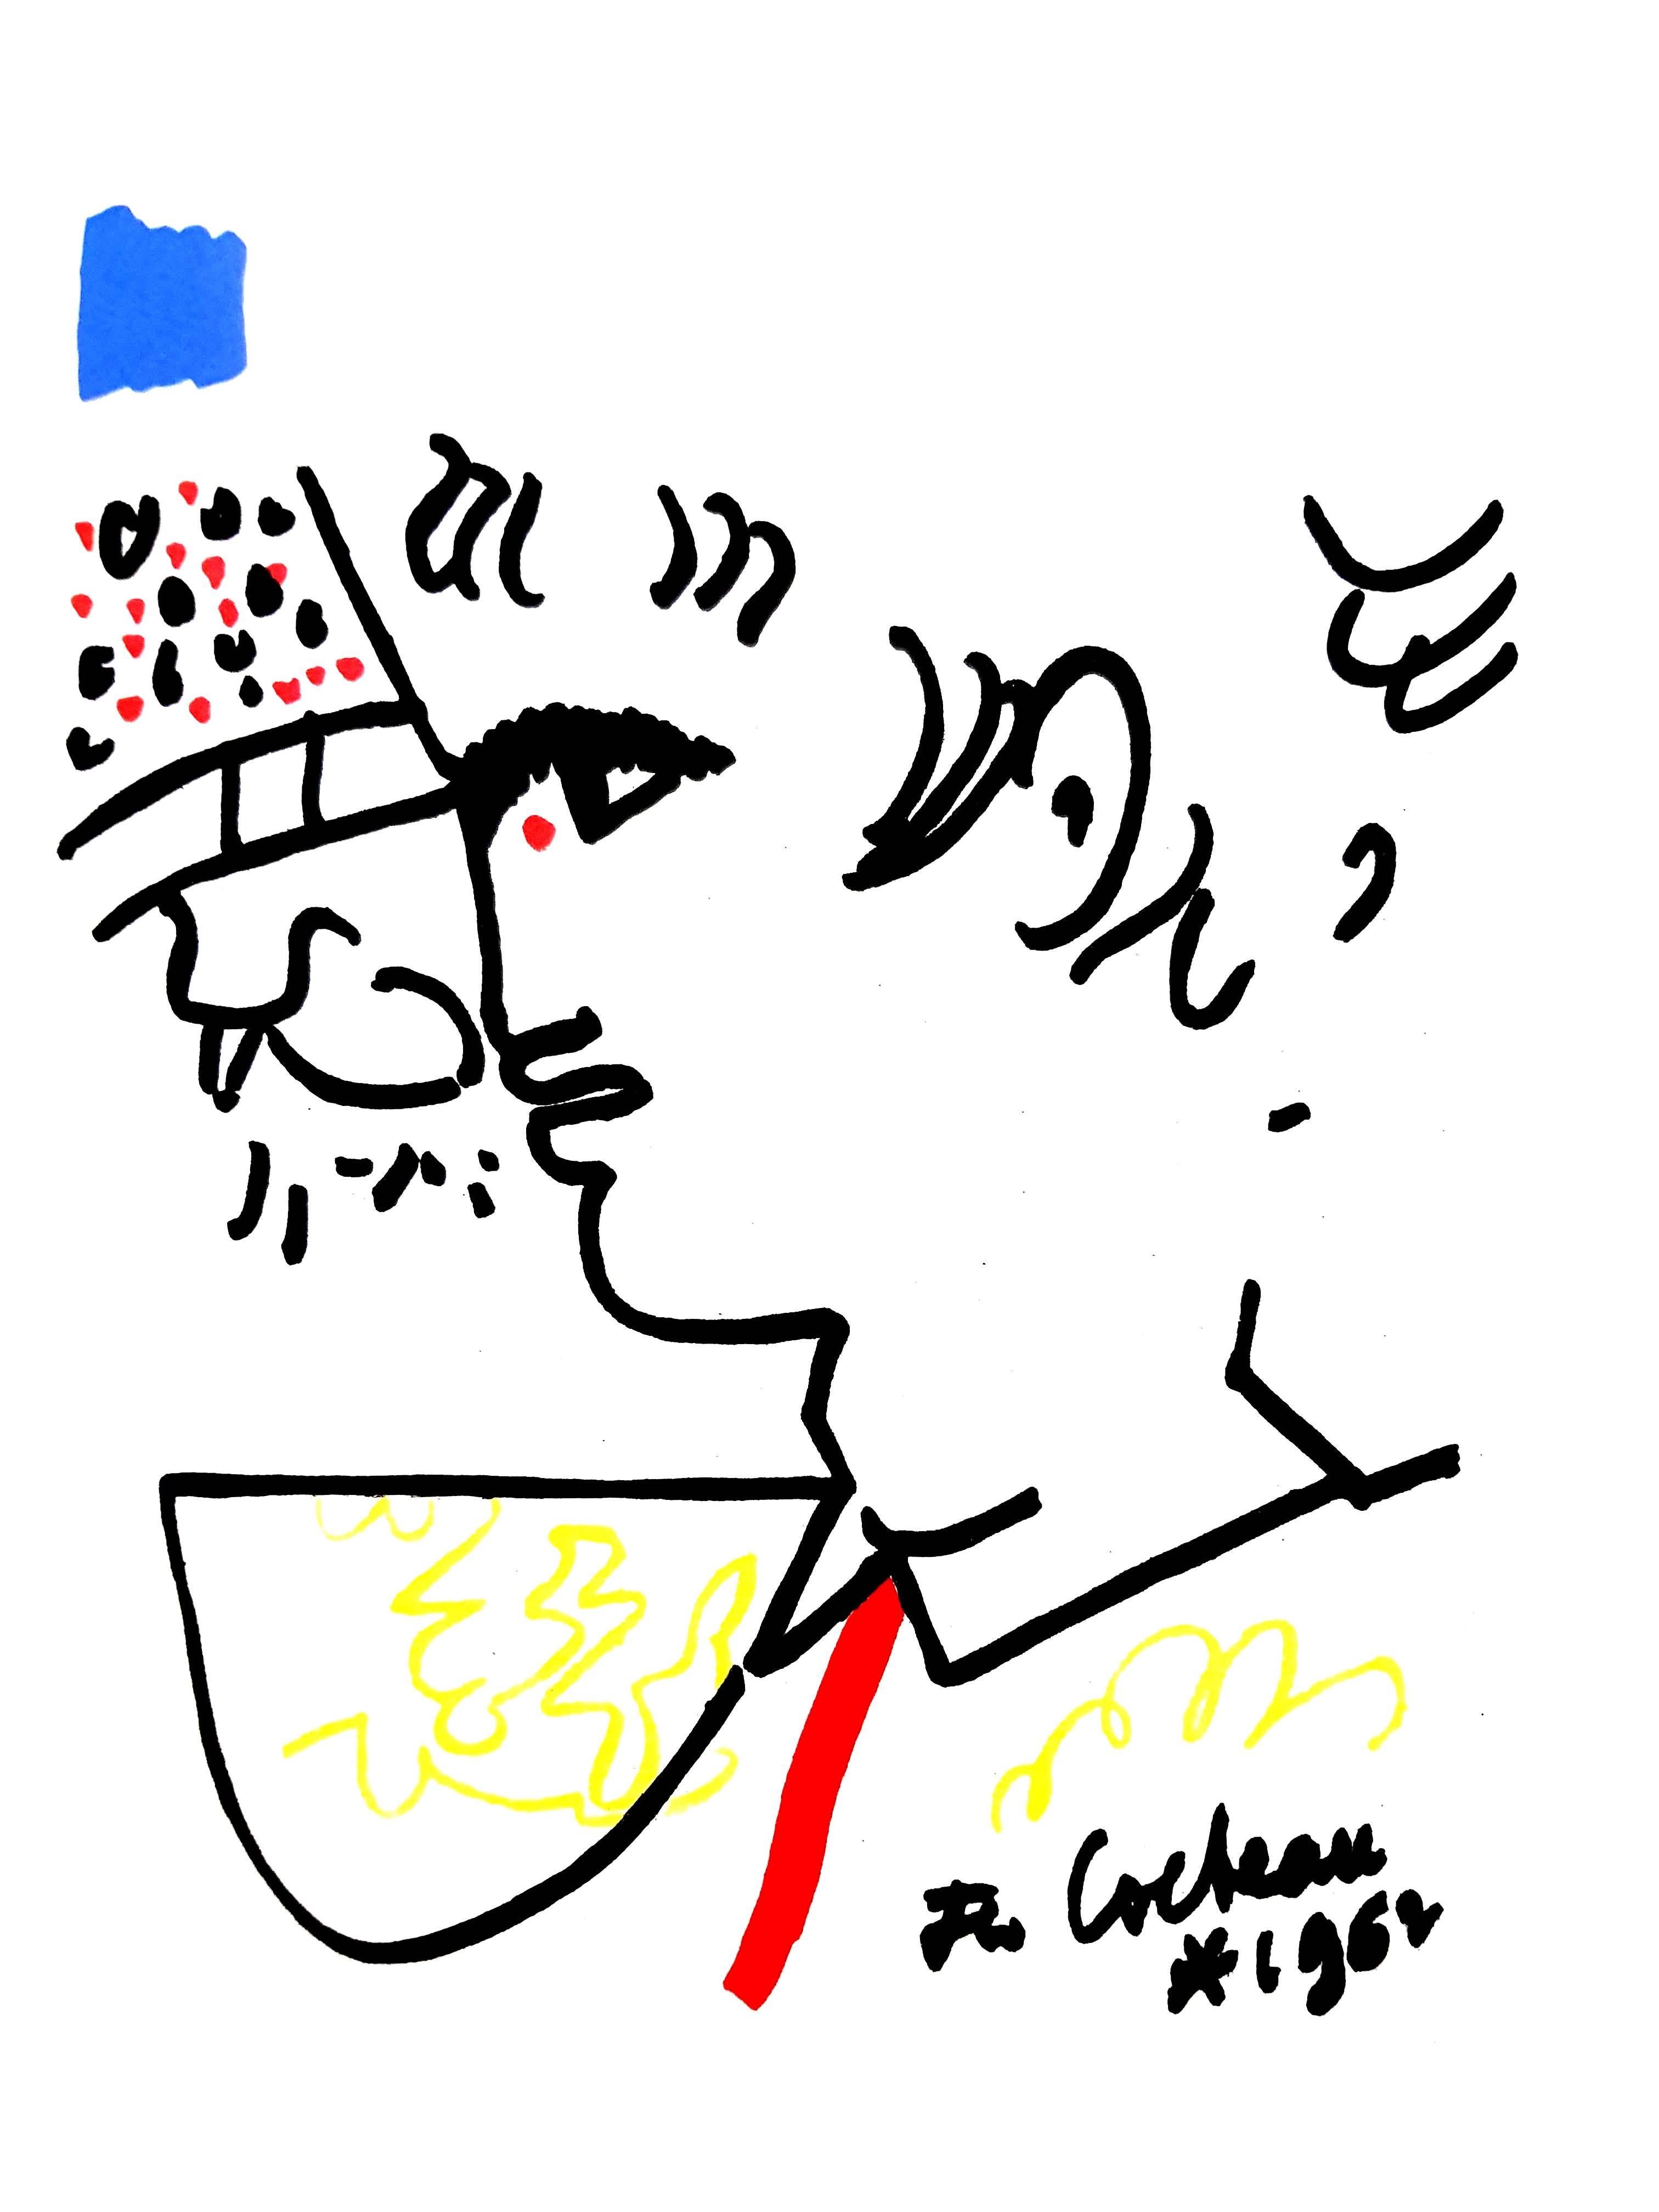 Original-Lithographie von Jean Cocteau
Titel: Taureaux
In der Platte signiert
Abmessungen: 40 x 30 cm
Auflage: 200
Luxuriöse Druckausgabe aus dem Portfolio von Trinckvel
1965

Jean Cocteau

Der Schriftsteller, Künstler und Filmregisseur Jean Cocteau